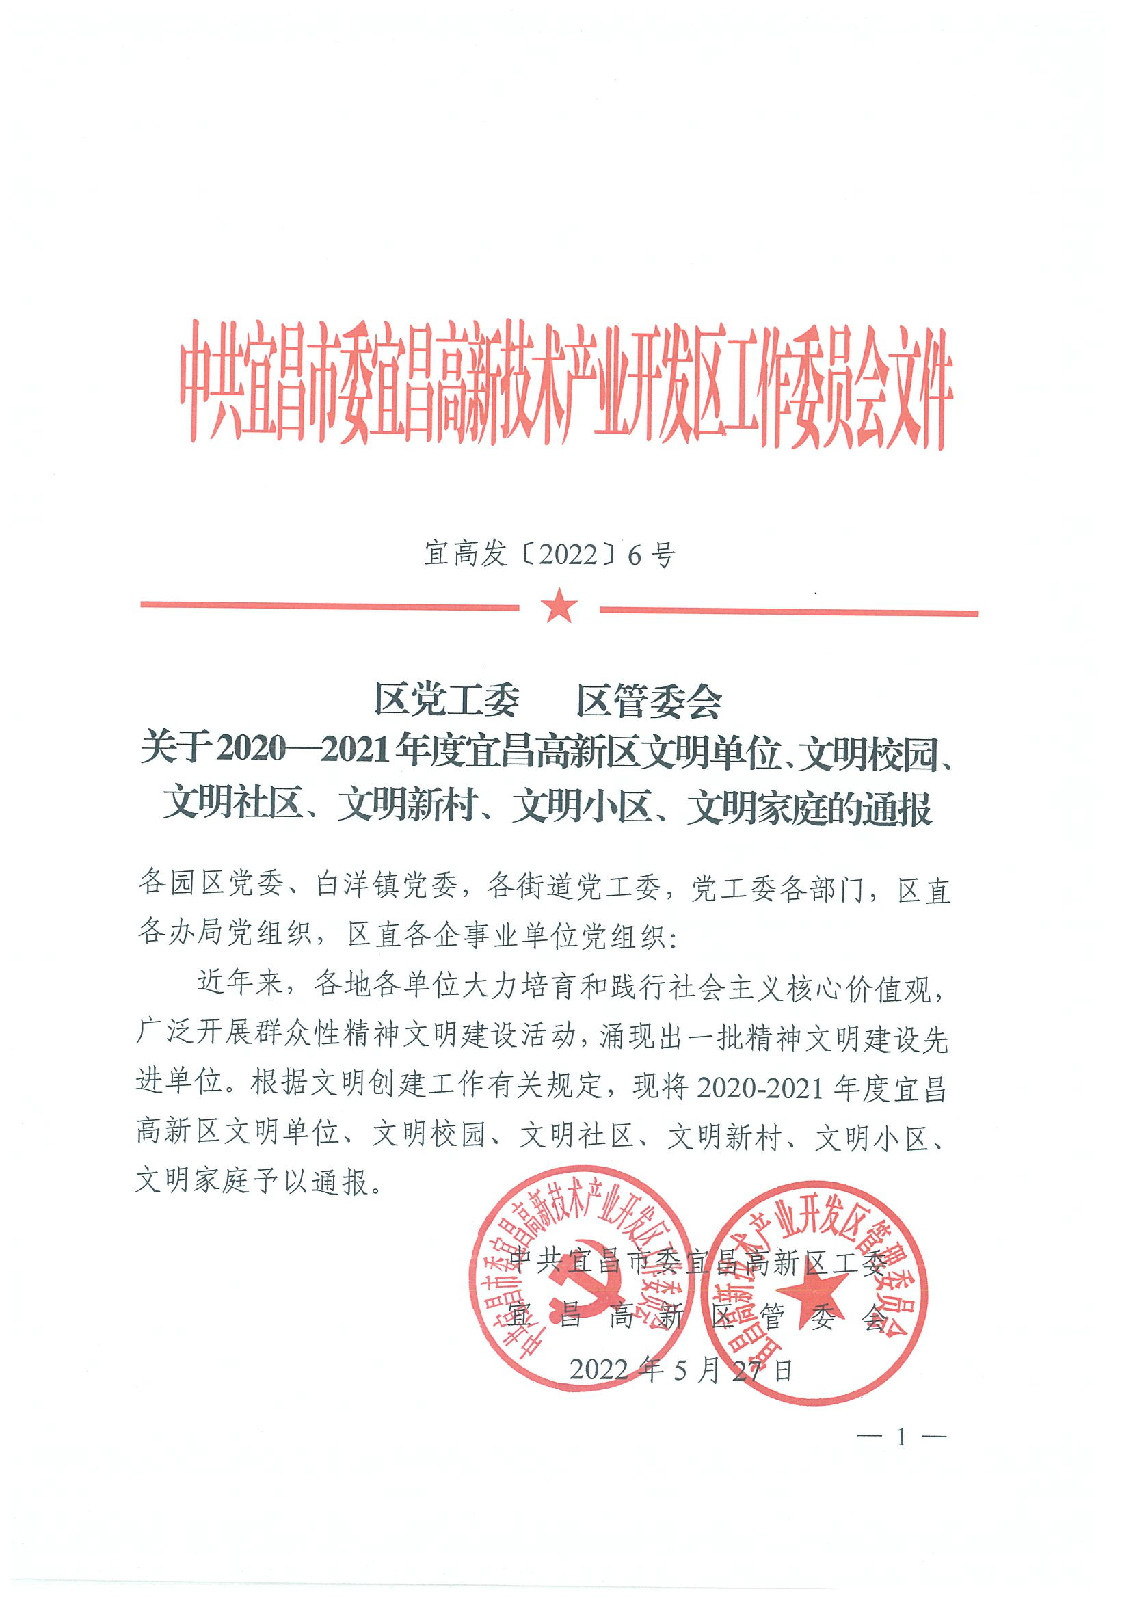 公司被评为2020-2021年度宜昌高新区文明单位